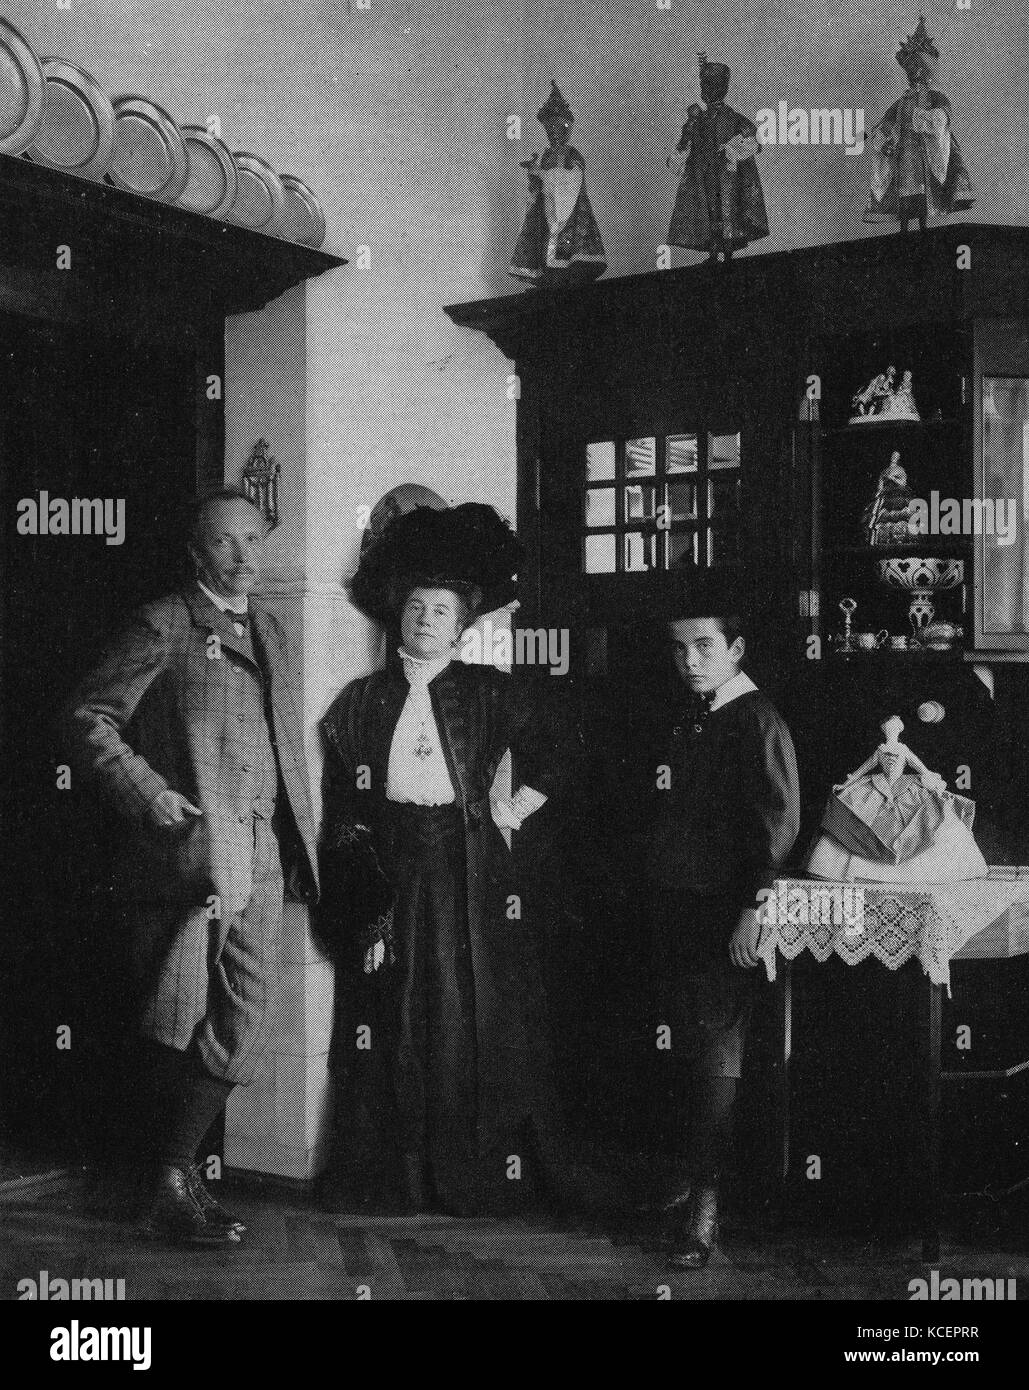 Foto von Richard Strauss (1864-1949), deutscher Komponist der Romantik und frühe moderne Ären. Vom 20. Jahrhundert Stockfoto